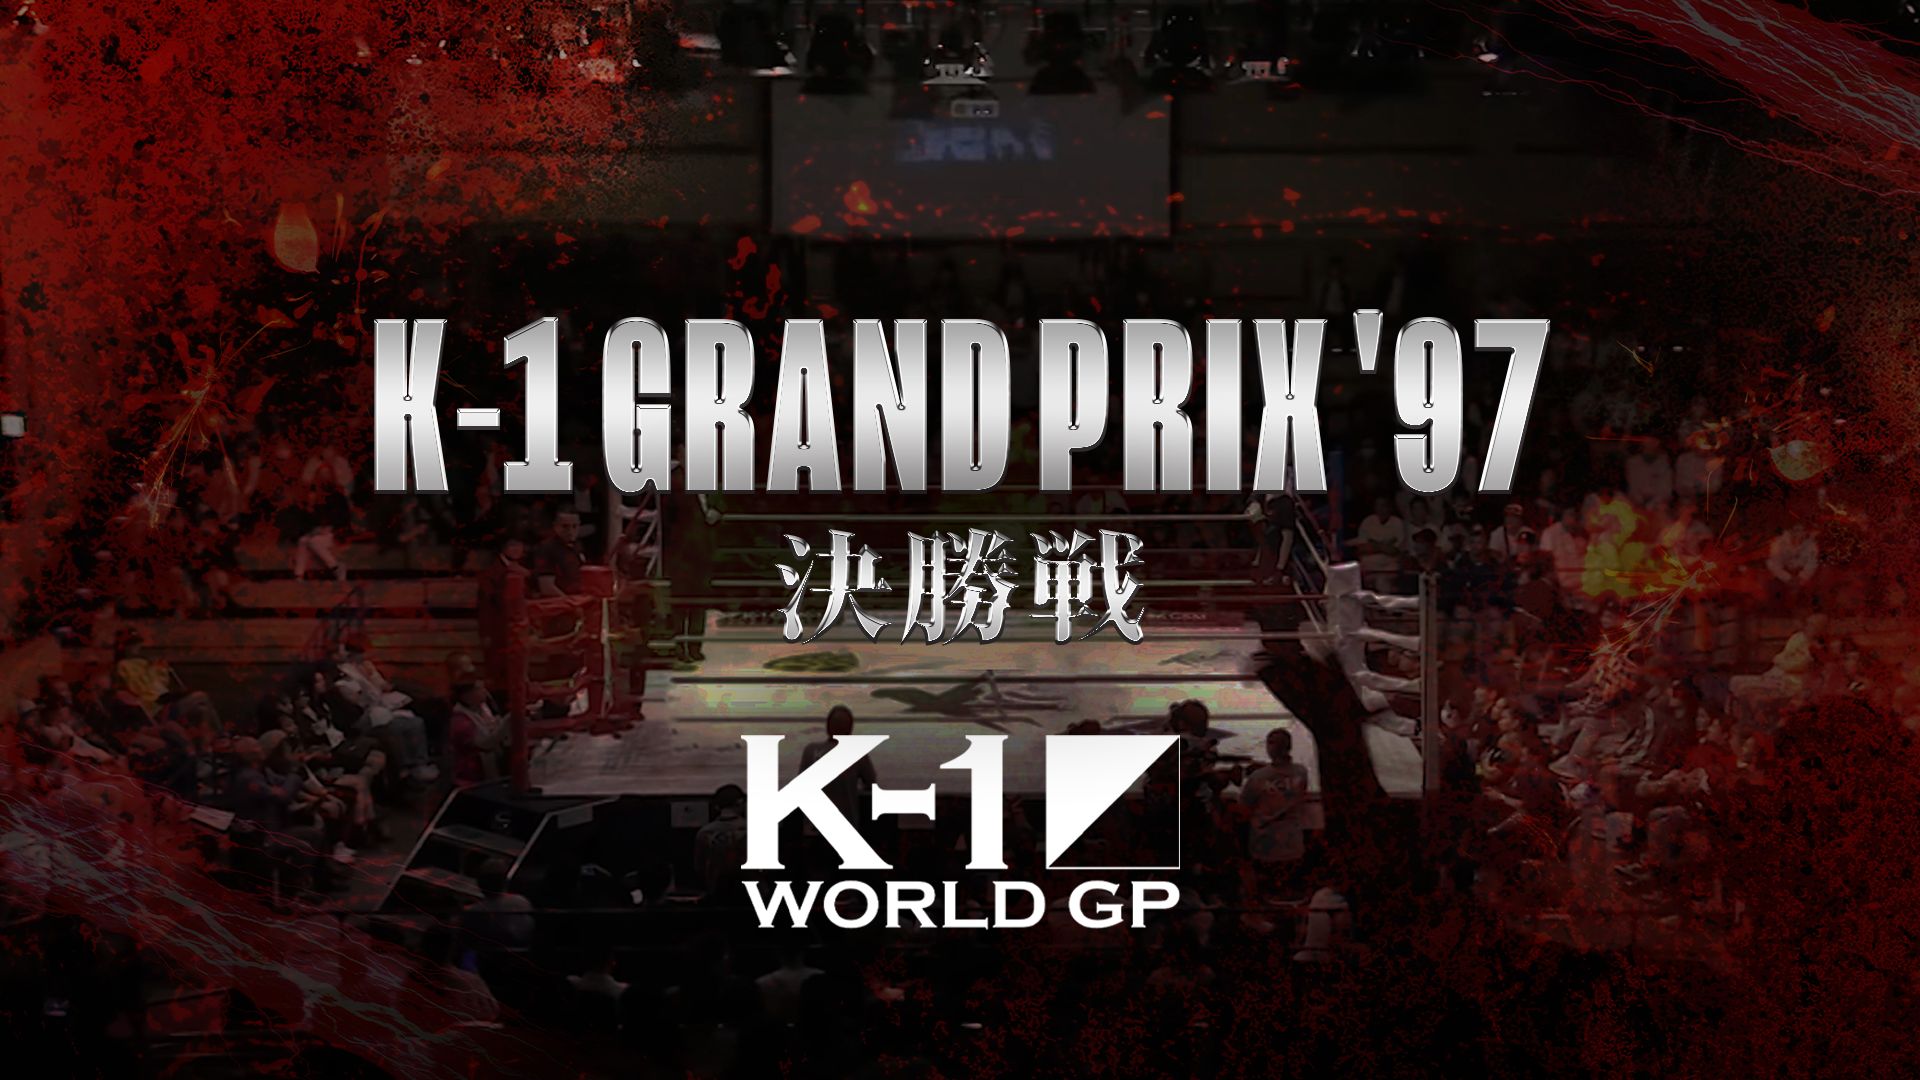 K-1 Grand Prix '97 決勝戦